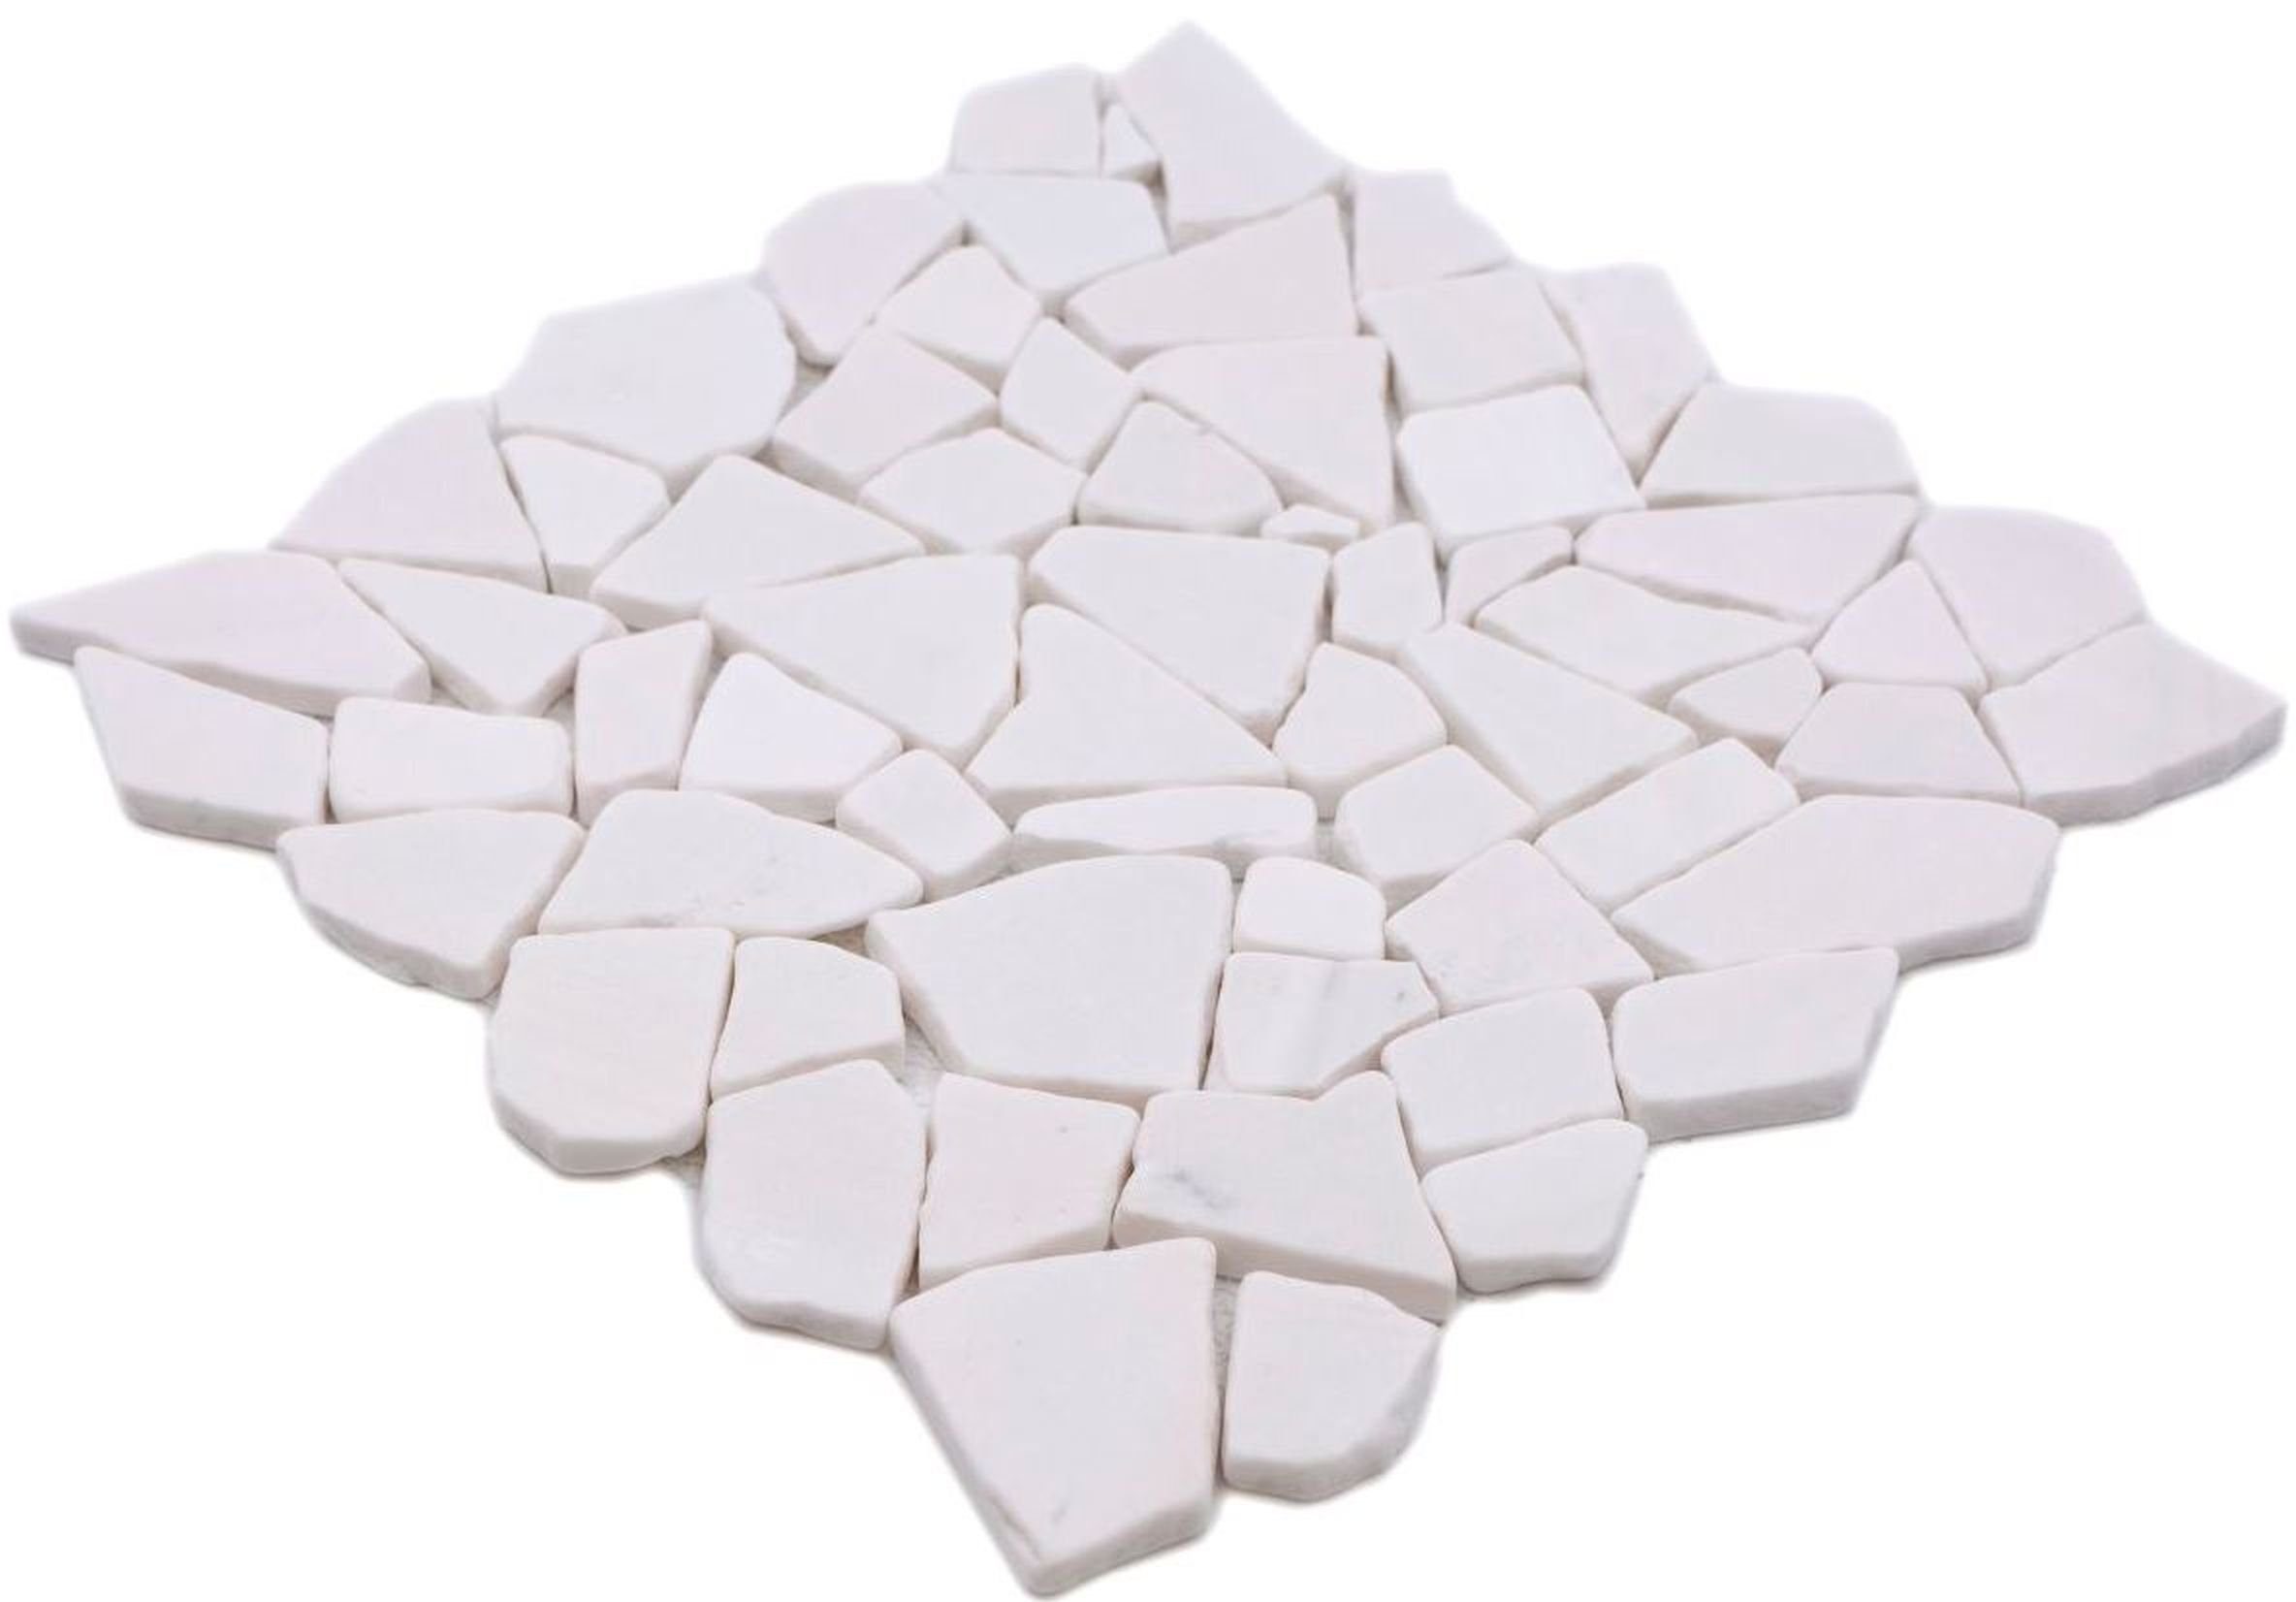 Mosani Mosaikfliesen Mosaik Bruch Polygonal Naturstein weiß Marmor Küche Wandfliese